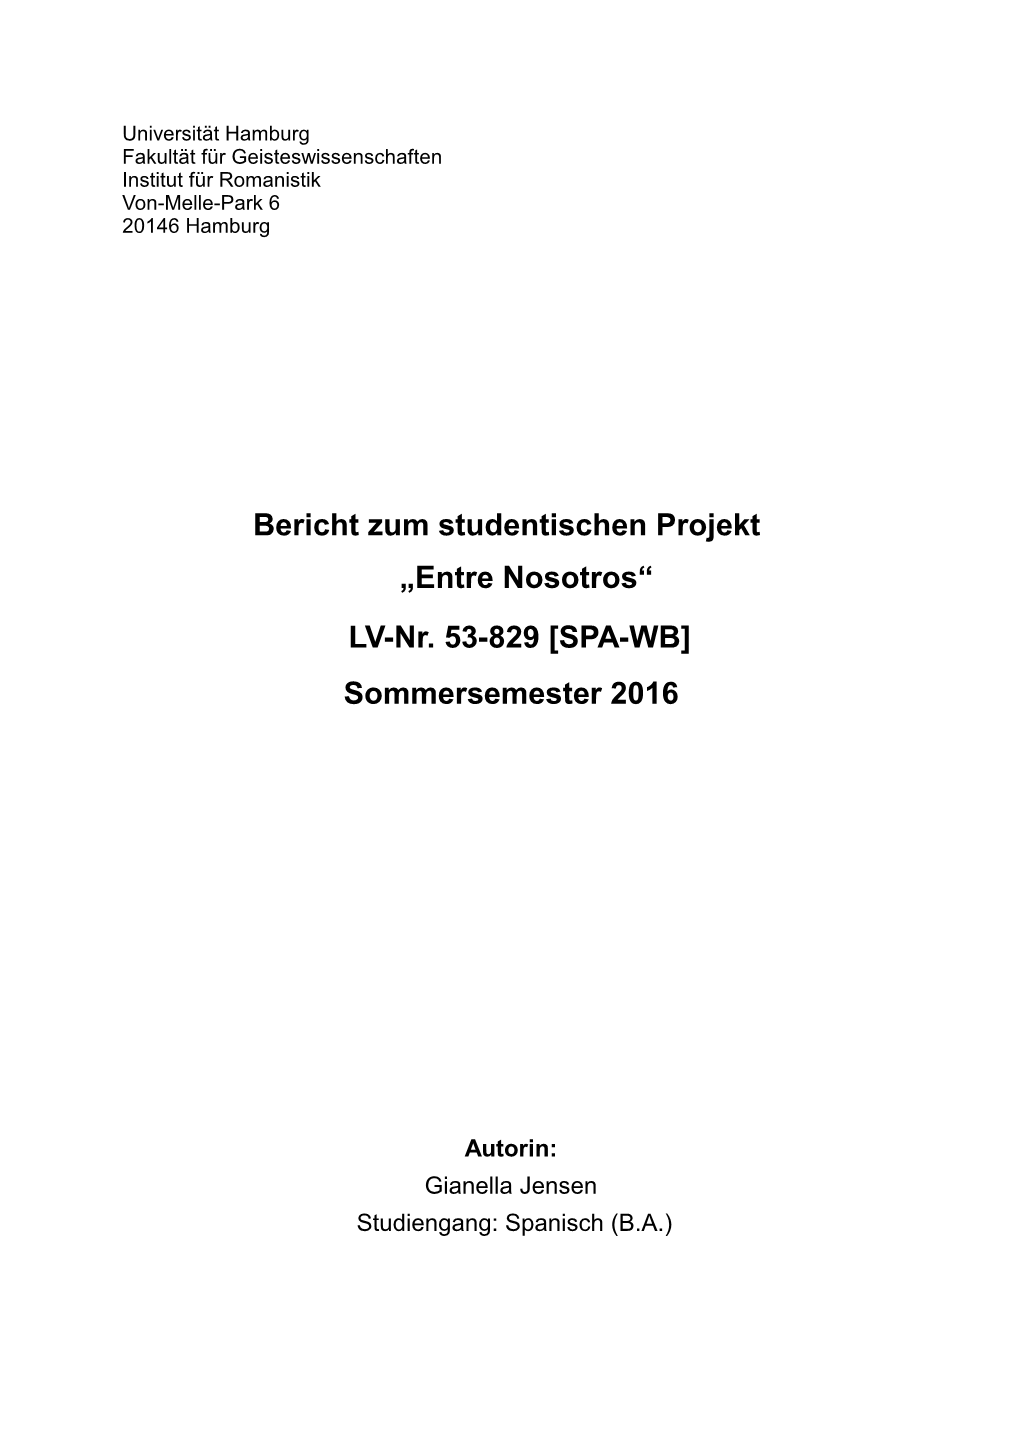 Bericht Zum Studentischen Projekt "Entre